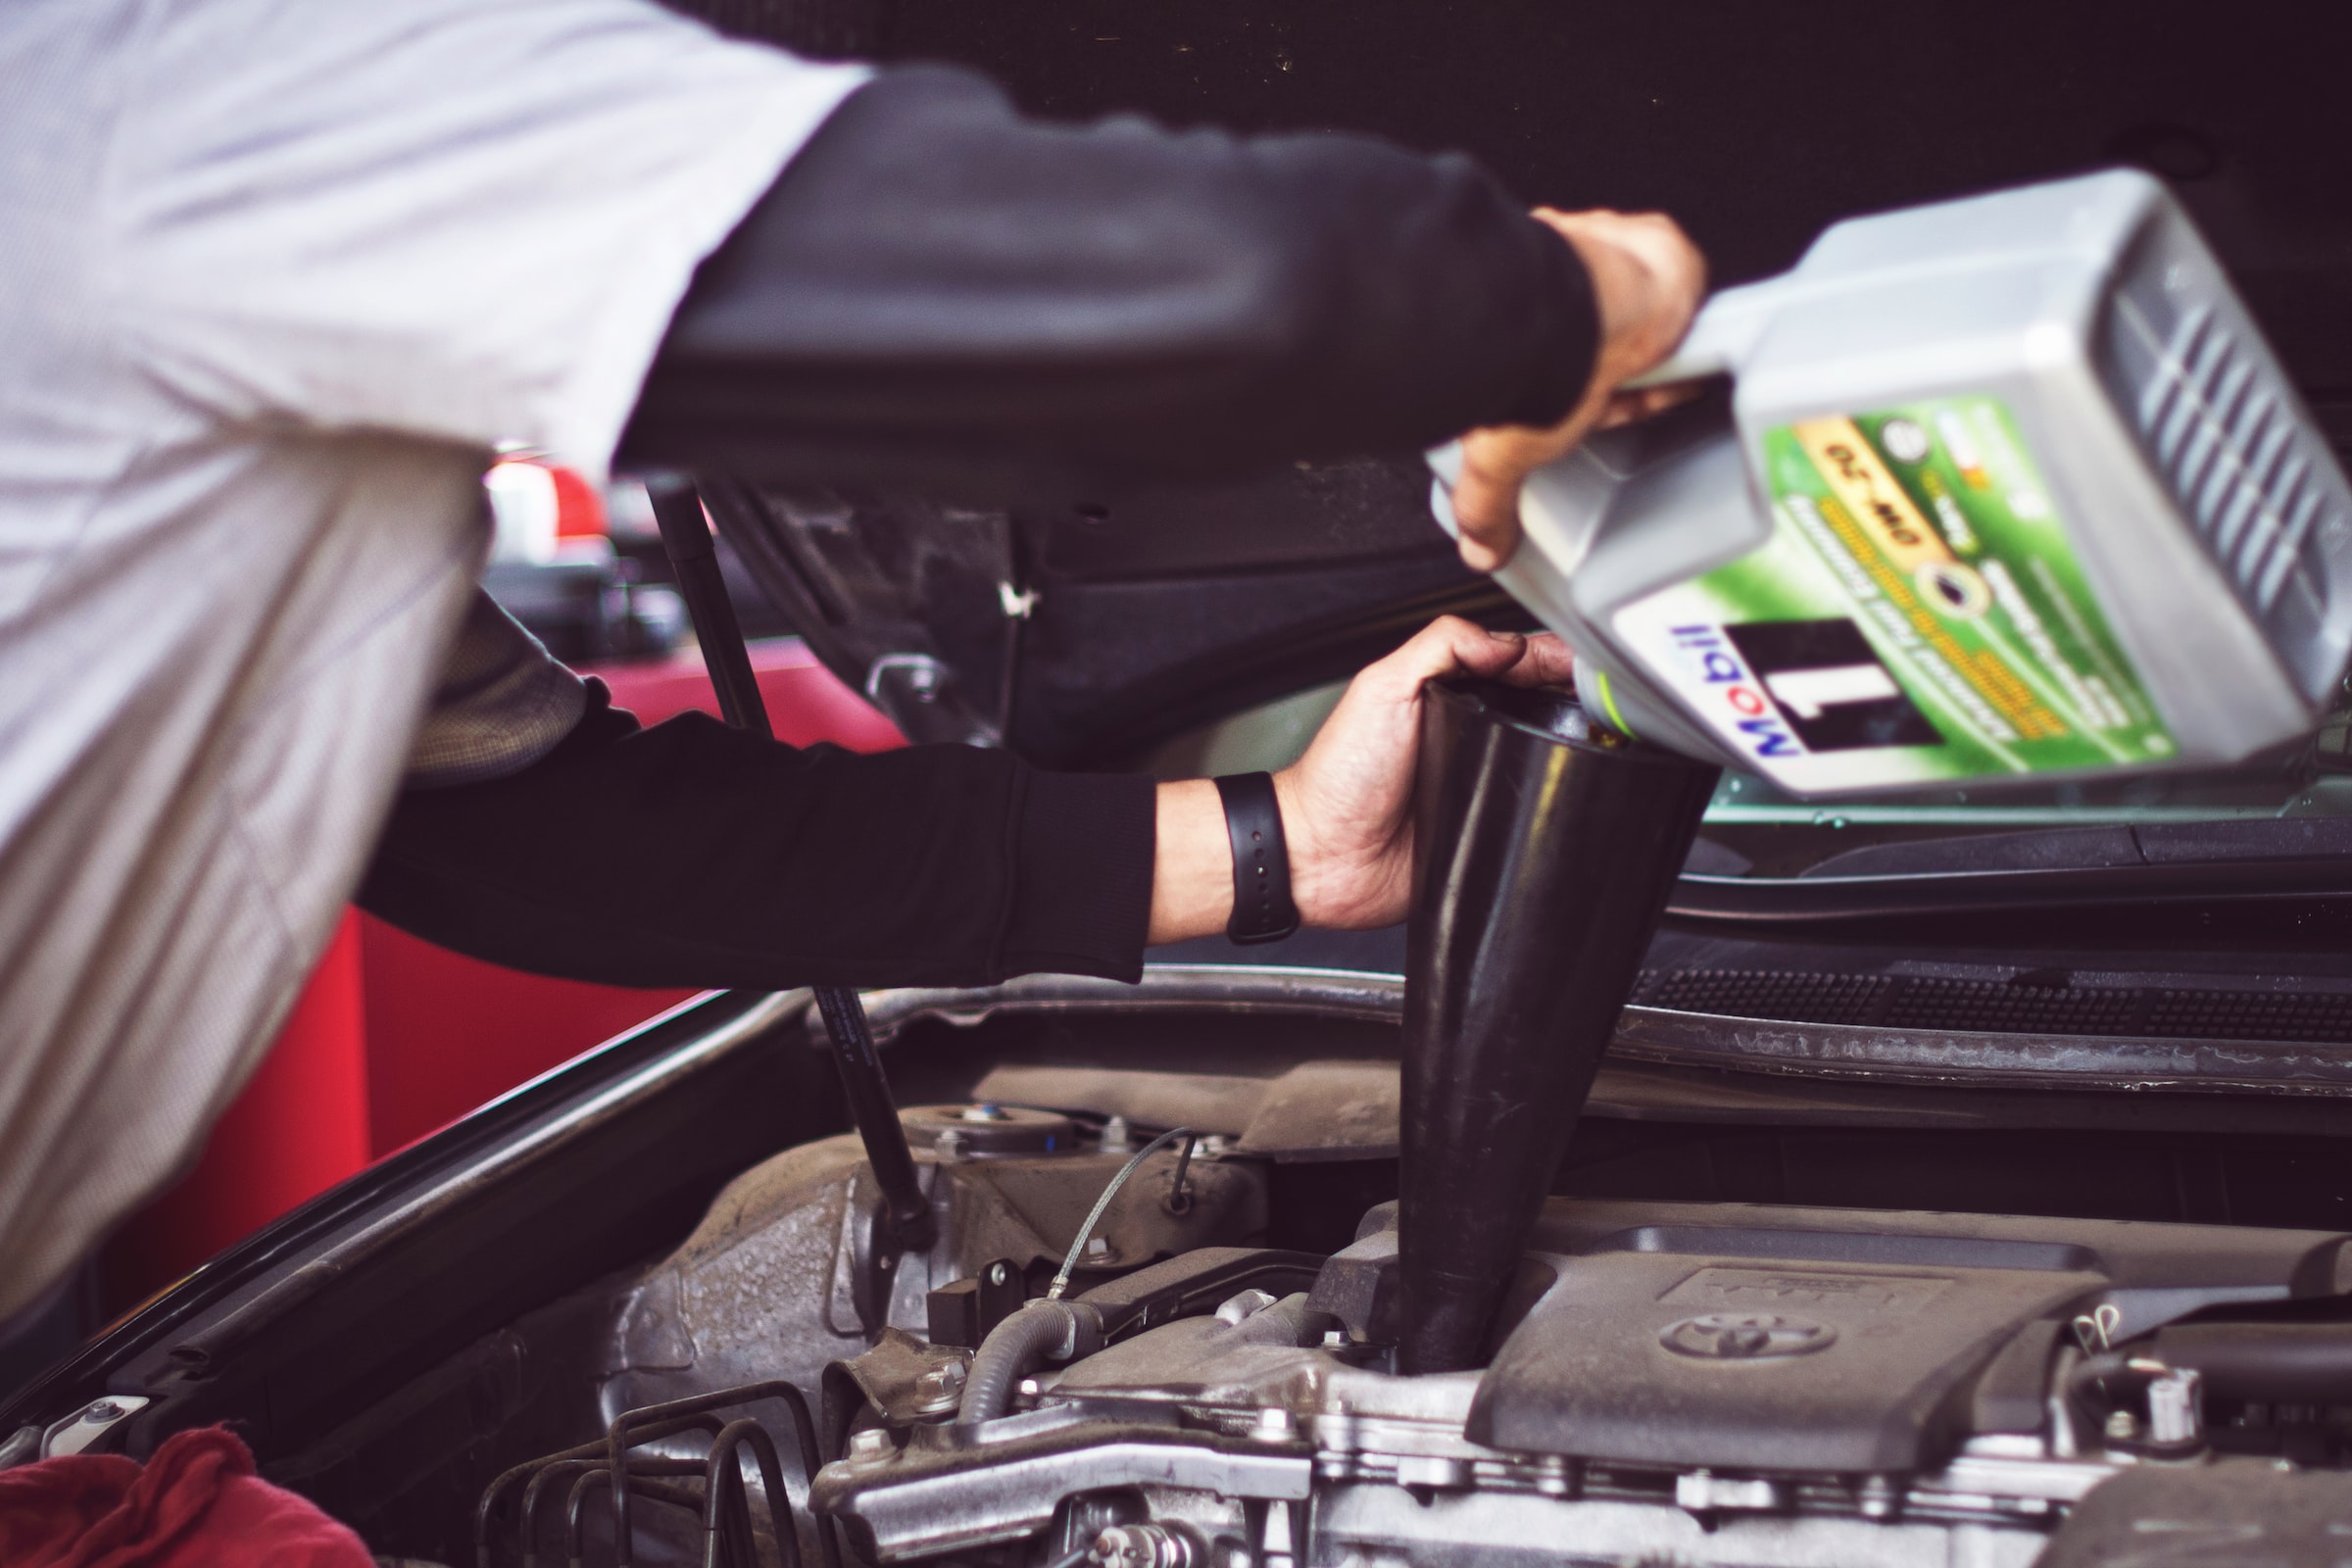 Cuidar do carro é essencial para evitar que ele sofra danos e te cause prejuízos. Veja quais são as melhores dicas de manutenção automotiva.